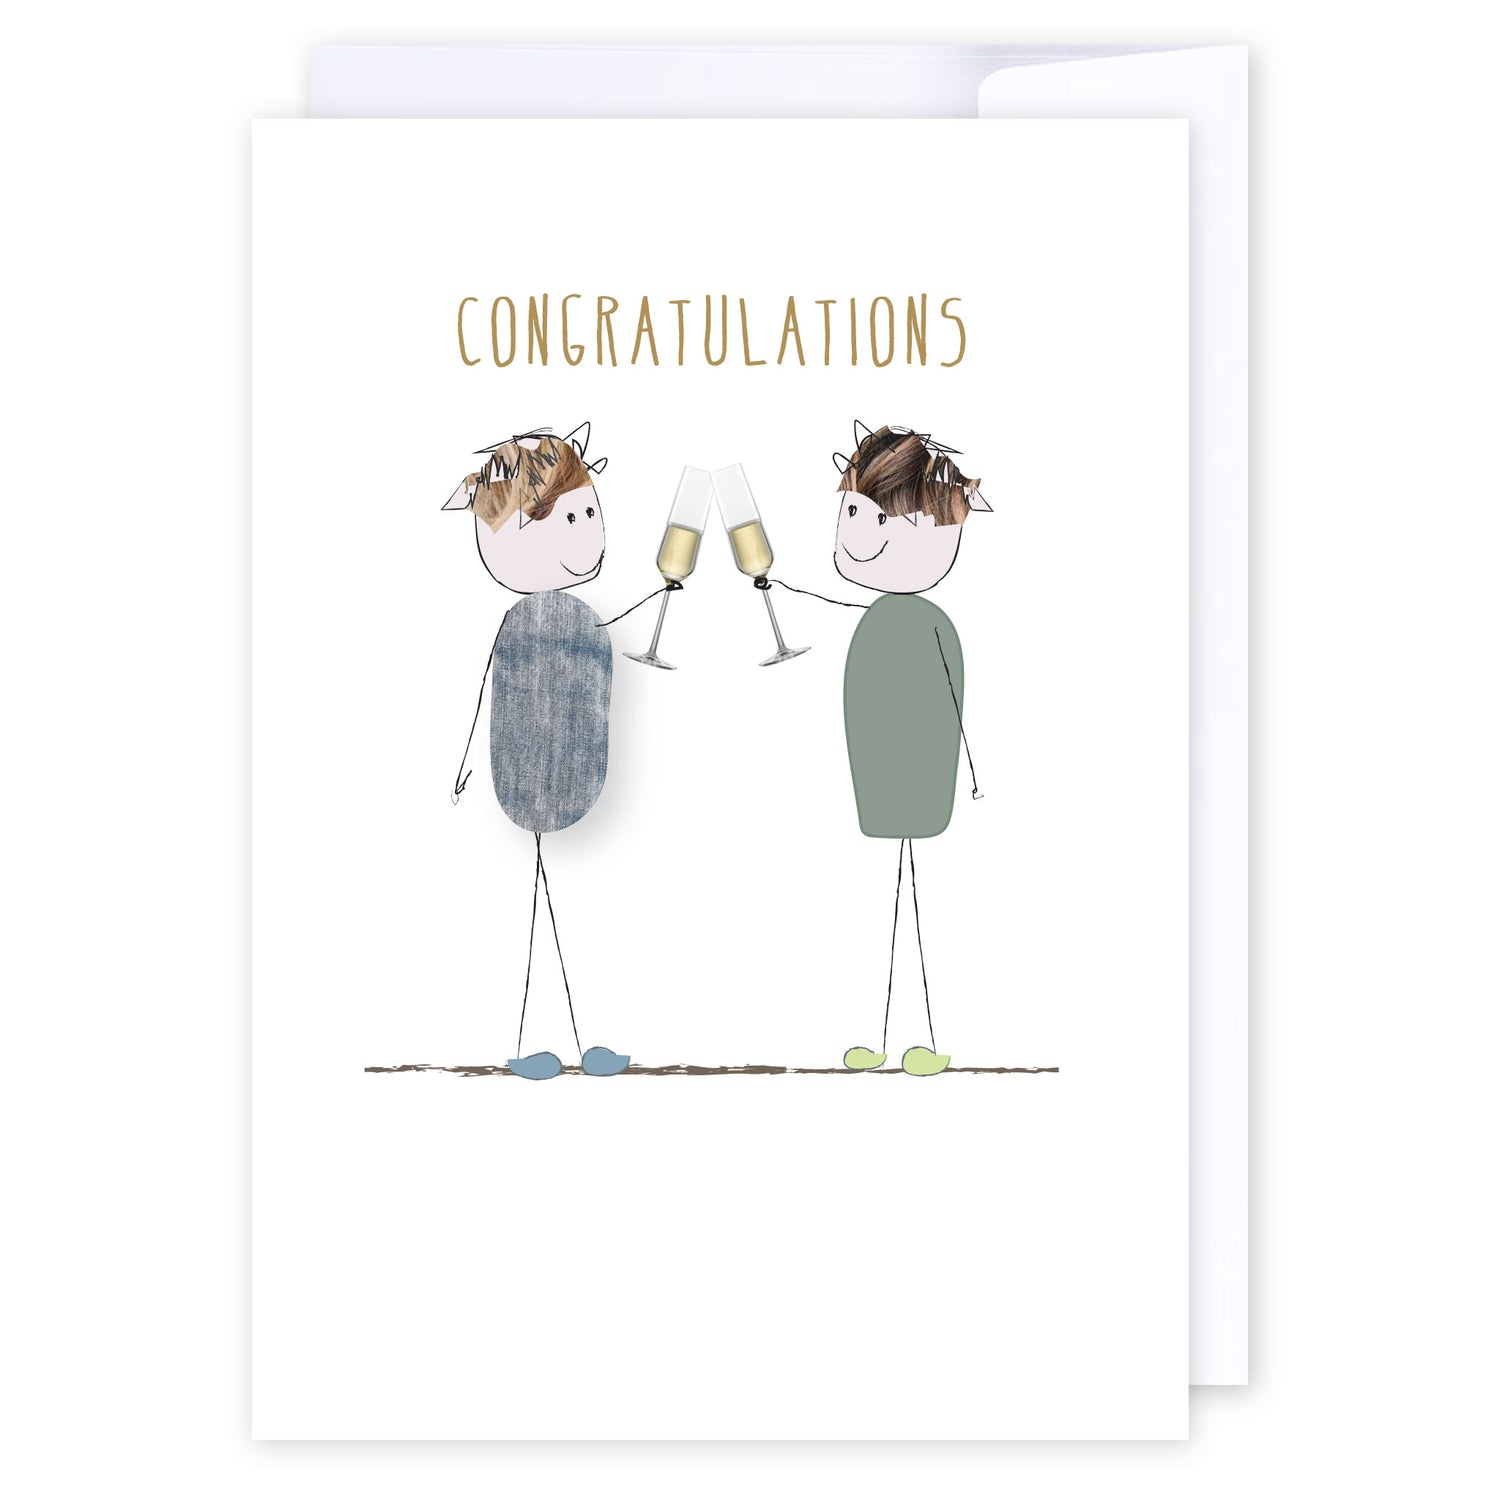 Congratulations Champagne